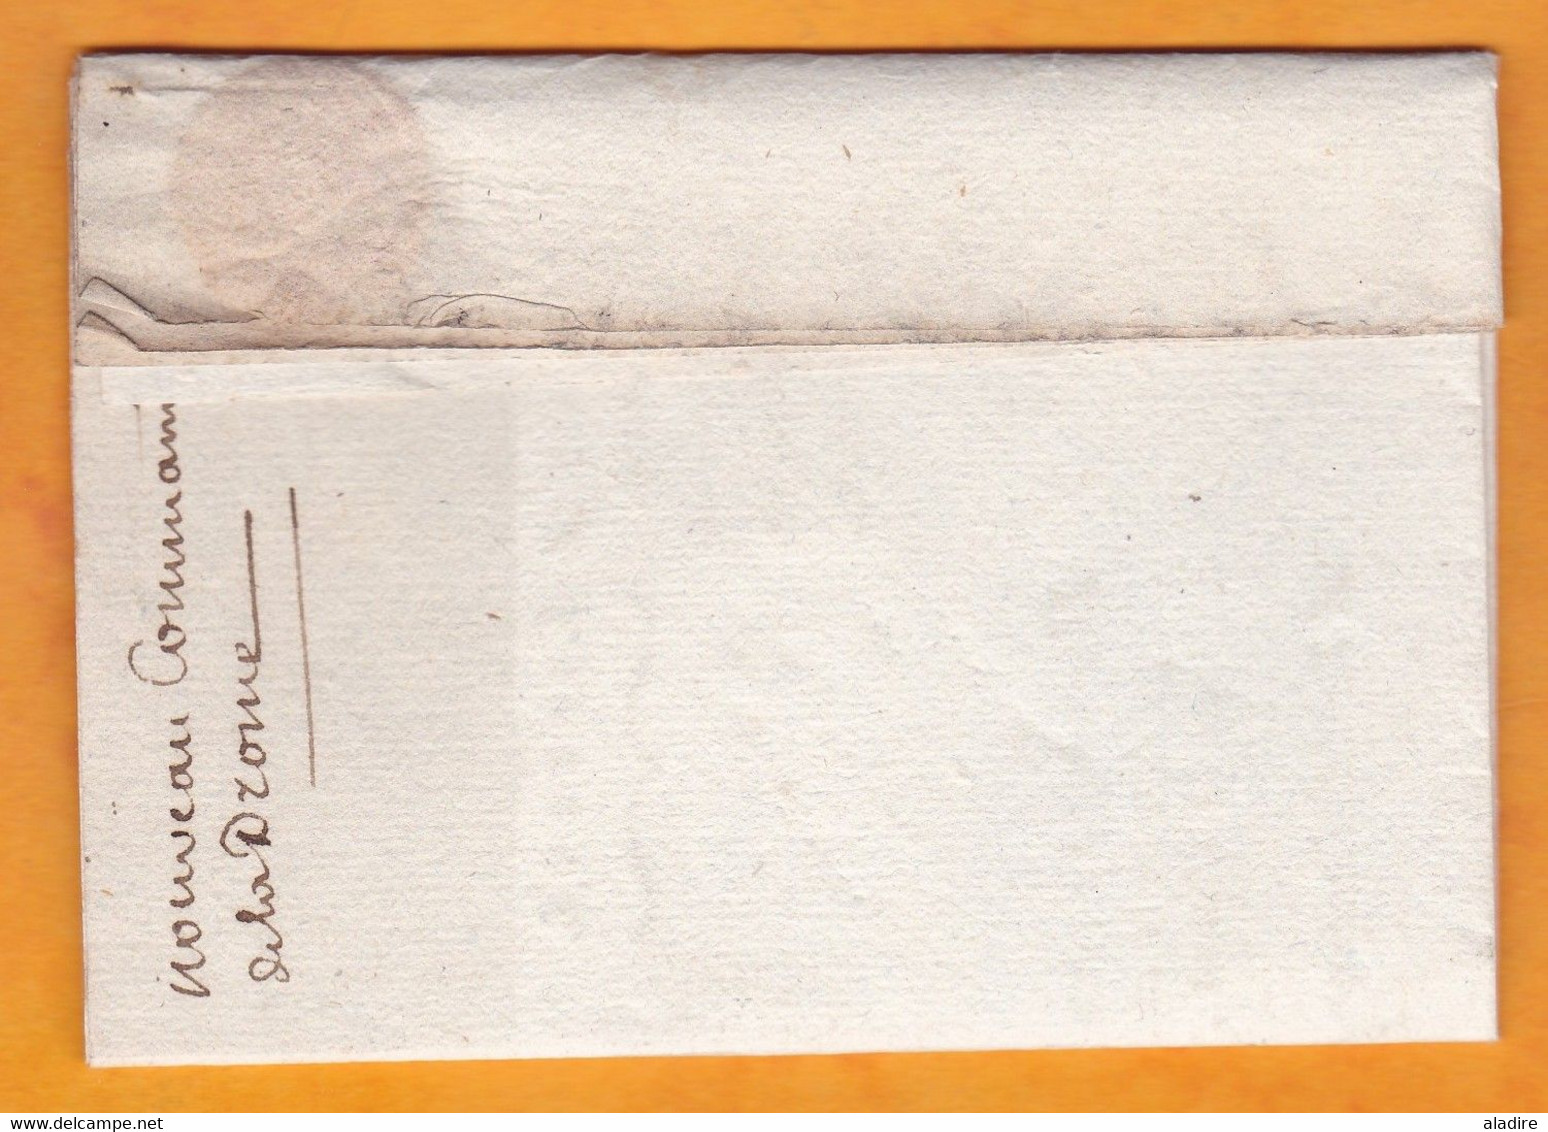 1800 - An 8 - Service Militaire - Marque Postale 25 VALENCE sur lettre imprimée pliée vers Saint Vallier, Drôme